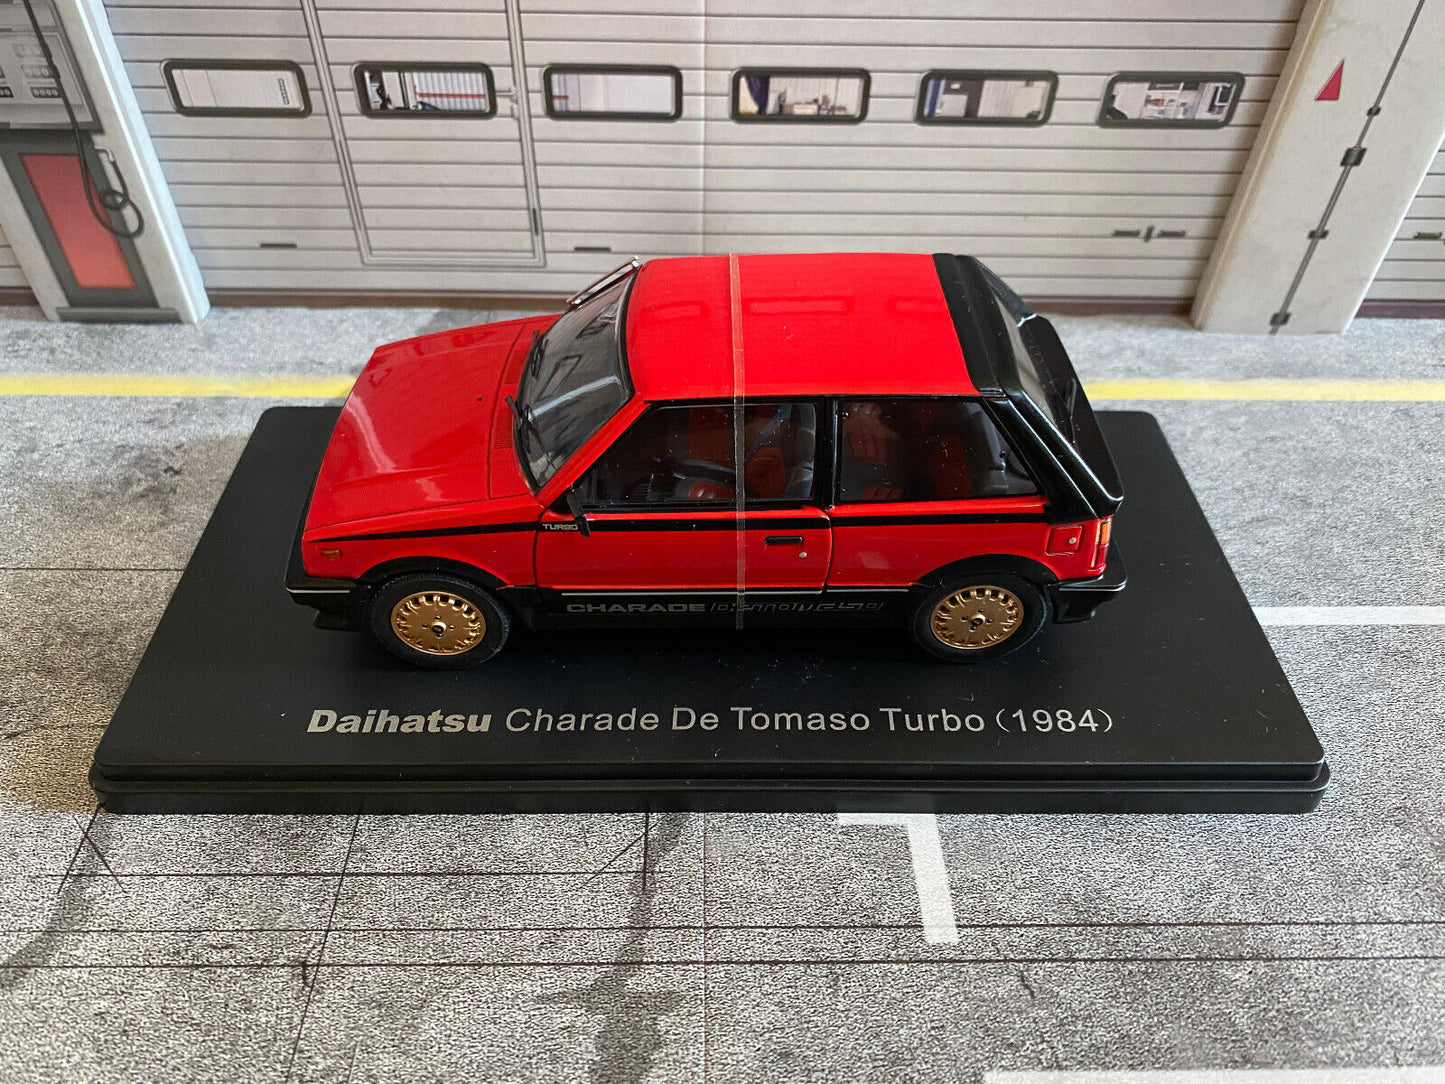 Daihatsu Charade De Tomaso Turbo 1984 RHD Metall DieCast 1:24 (no 1:18)